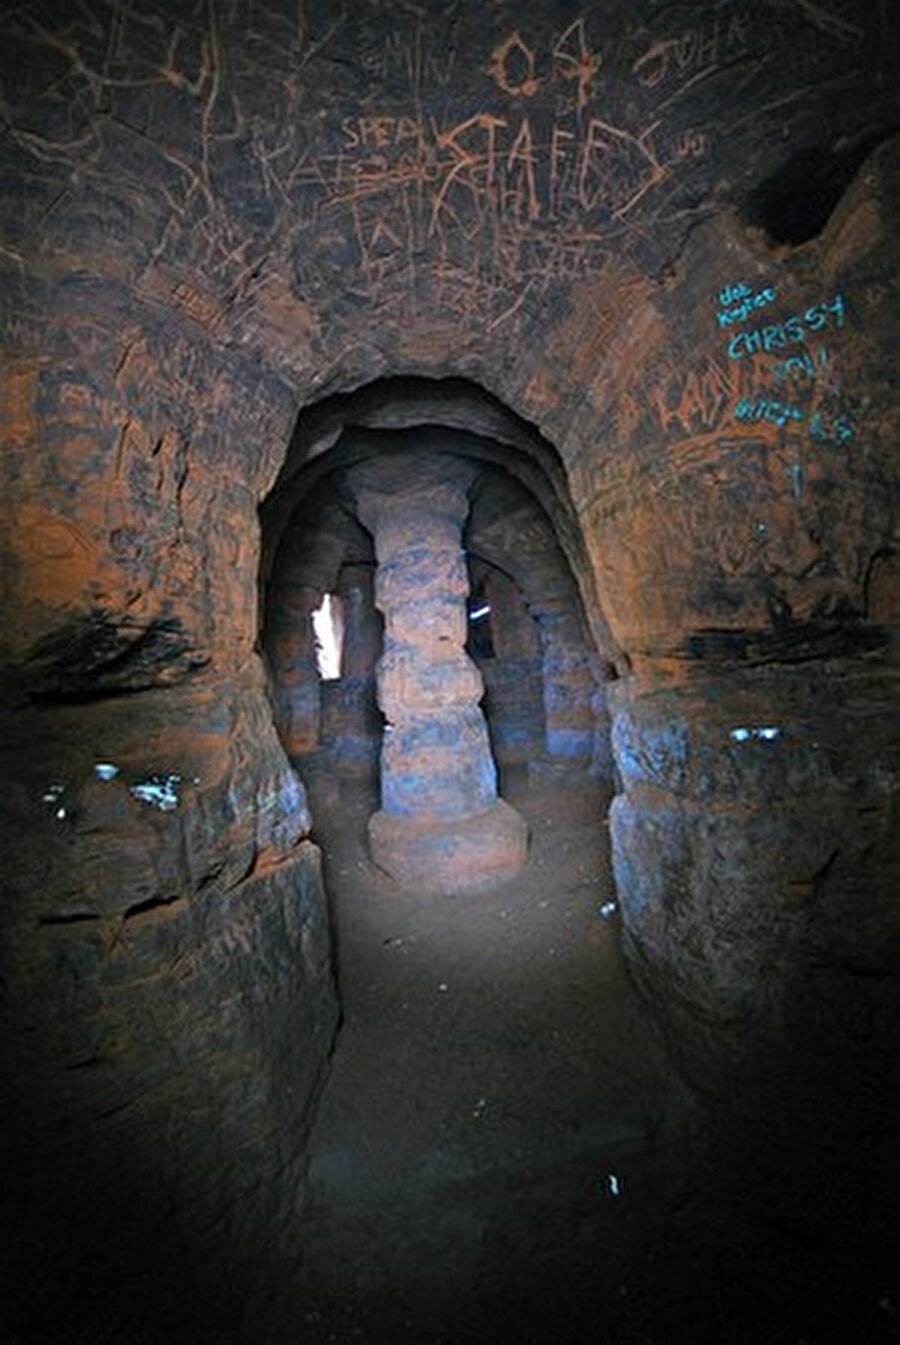 İngiltere'de yer alan bu mağaranın fotoğrafları Michael Scott tarafından çekilmiş.